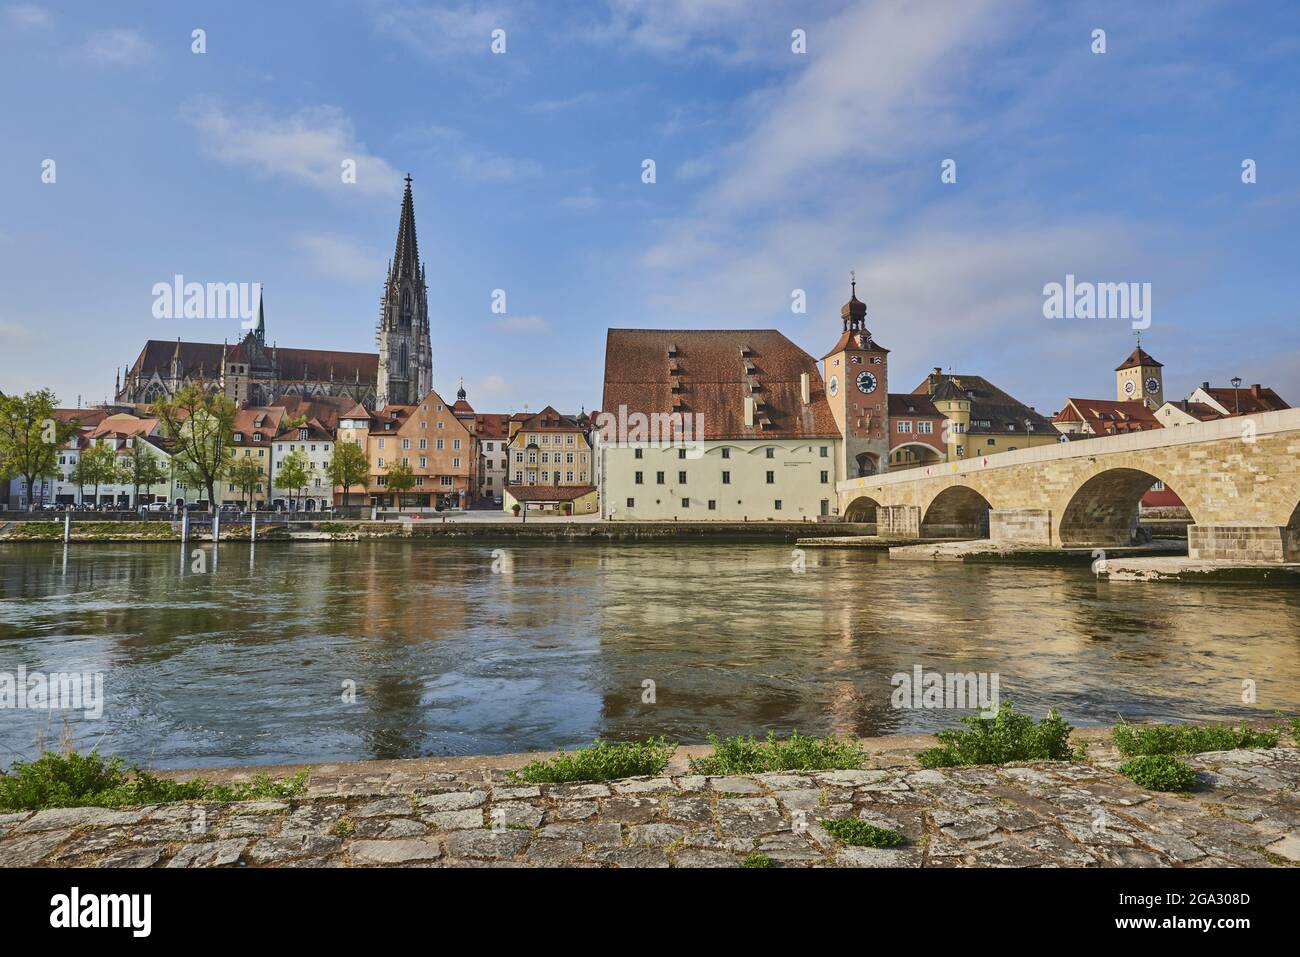 Blick über die Donau mit der alten Steinbrücke aus dem 12. Jahrhundert und dem gotischen Petersdom vom Steinweg am Marc​-Aurel-Ufer aus ... Stockfoto